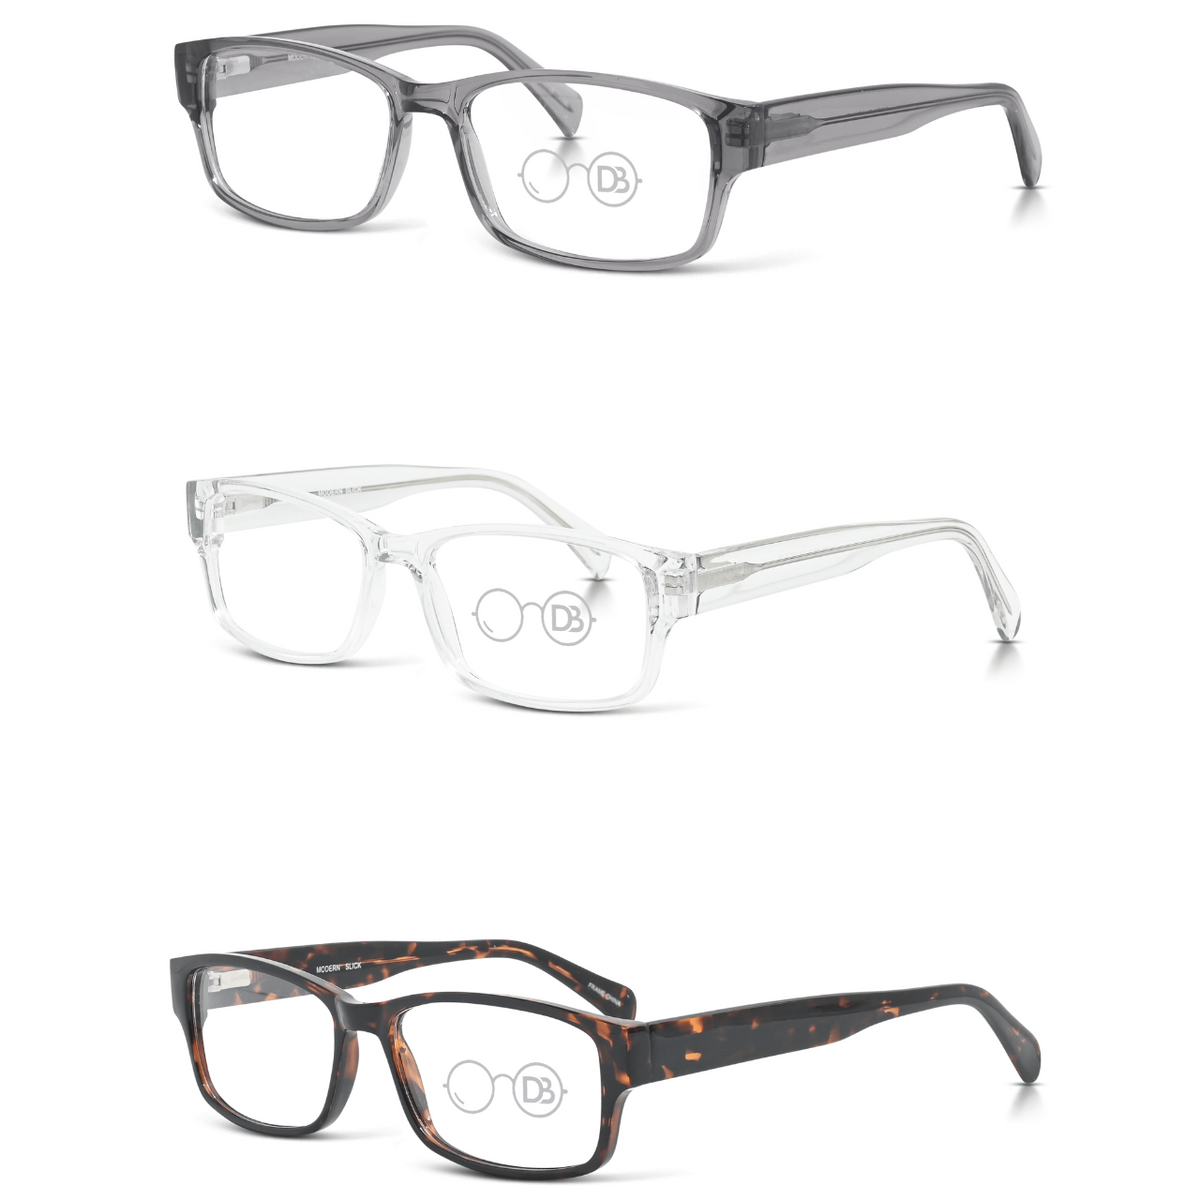 Trendy Reading Glasses - Slick